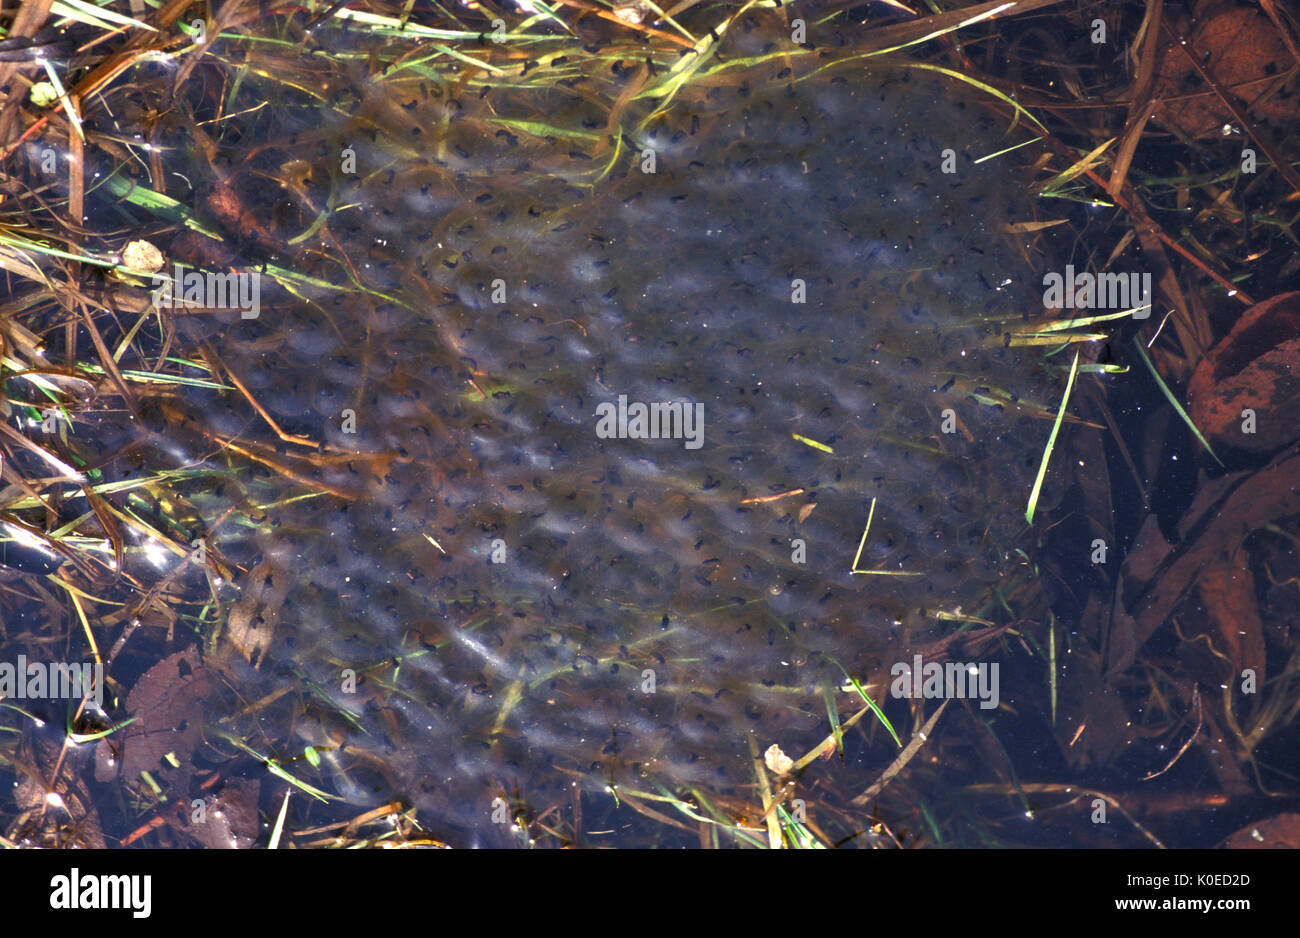 Rana comune spawn (Rana temporaria) in stagno, acqua, ammassate insieme parte di sviluppo del ciclo di vita Foto Stock